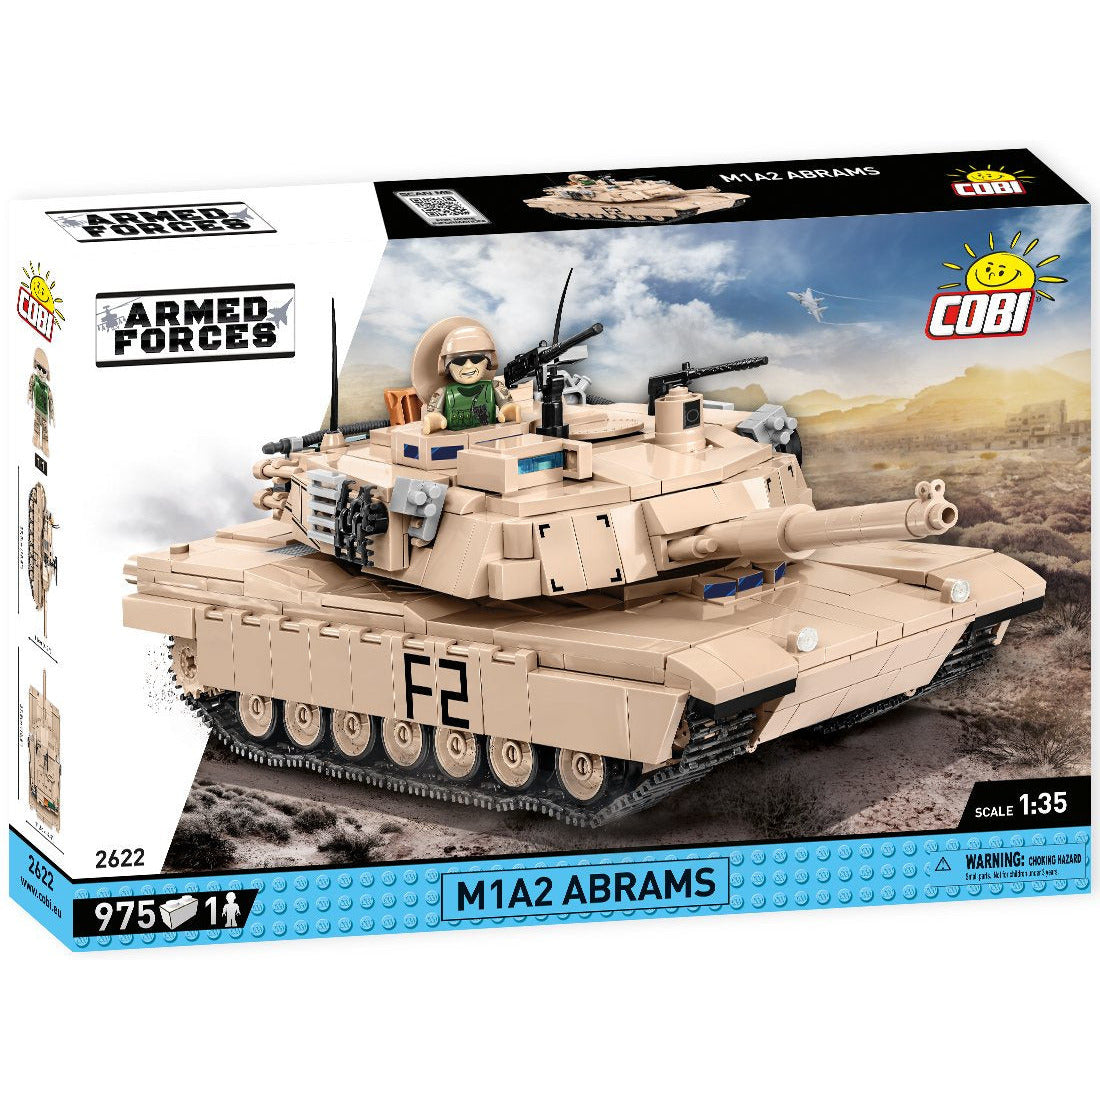 Armed Forces: 2622 M1A2 Abrams 975 PCS